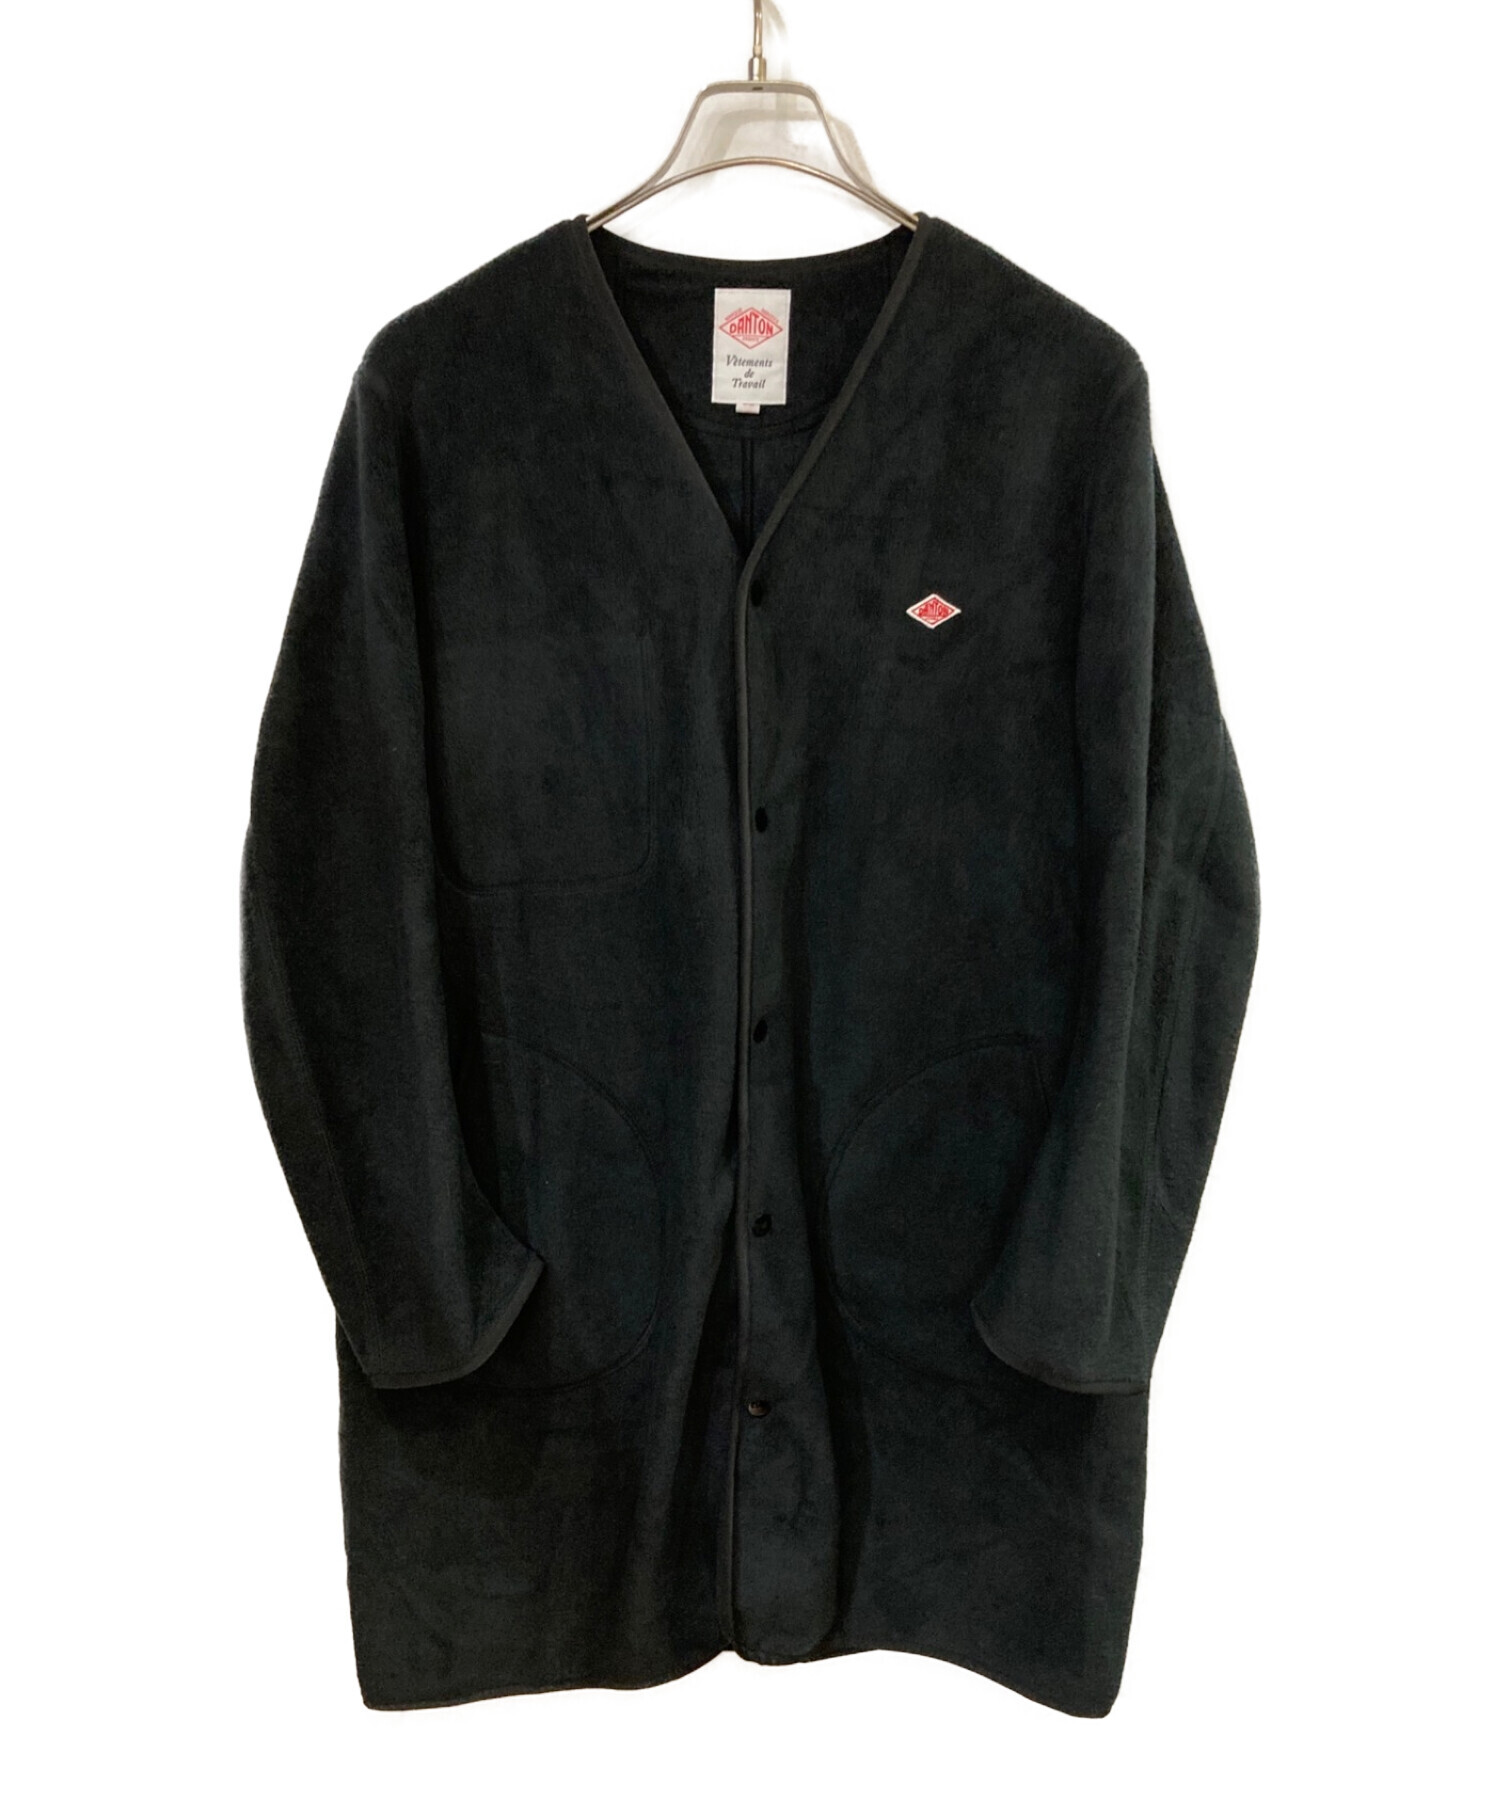 DANTON (ダントン) ノーカラーフリースジャケット ブラック サイズ:M